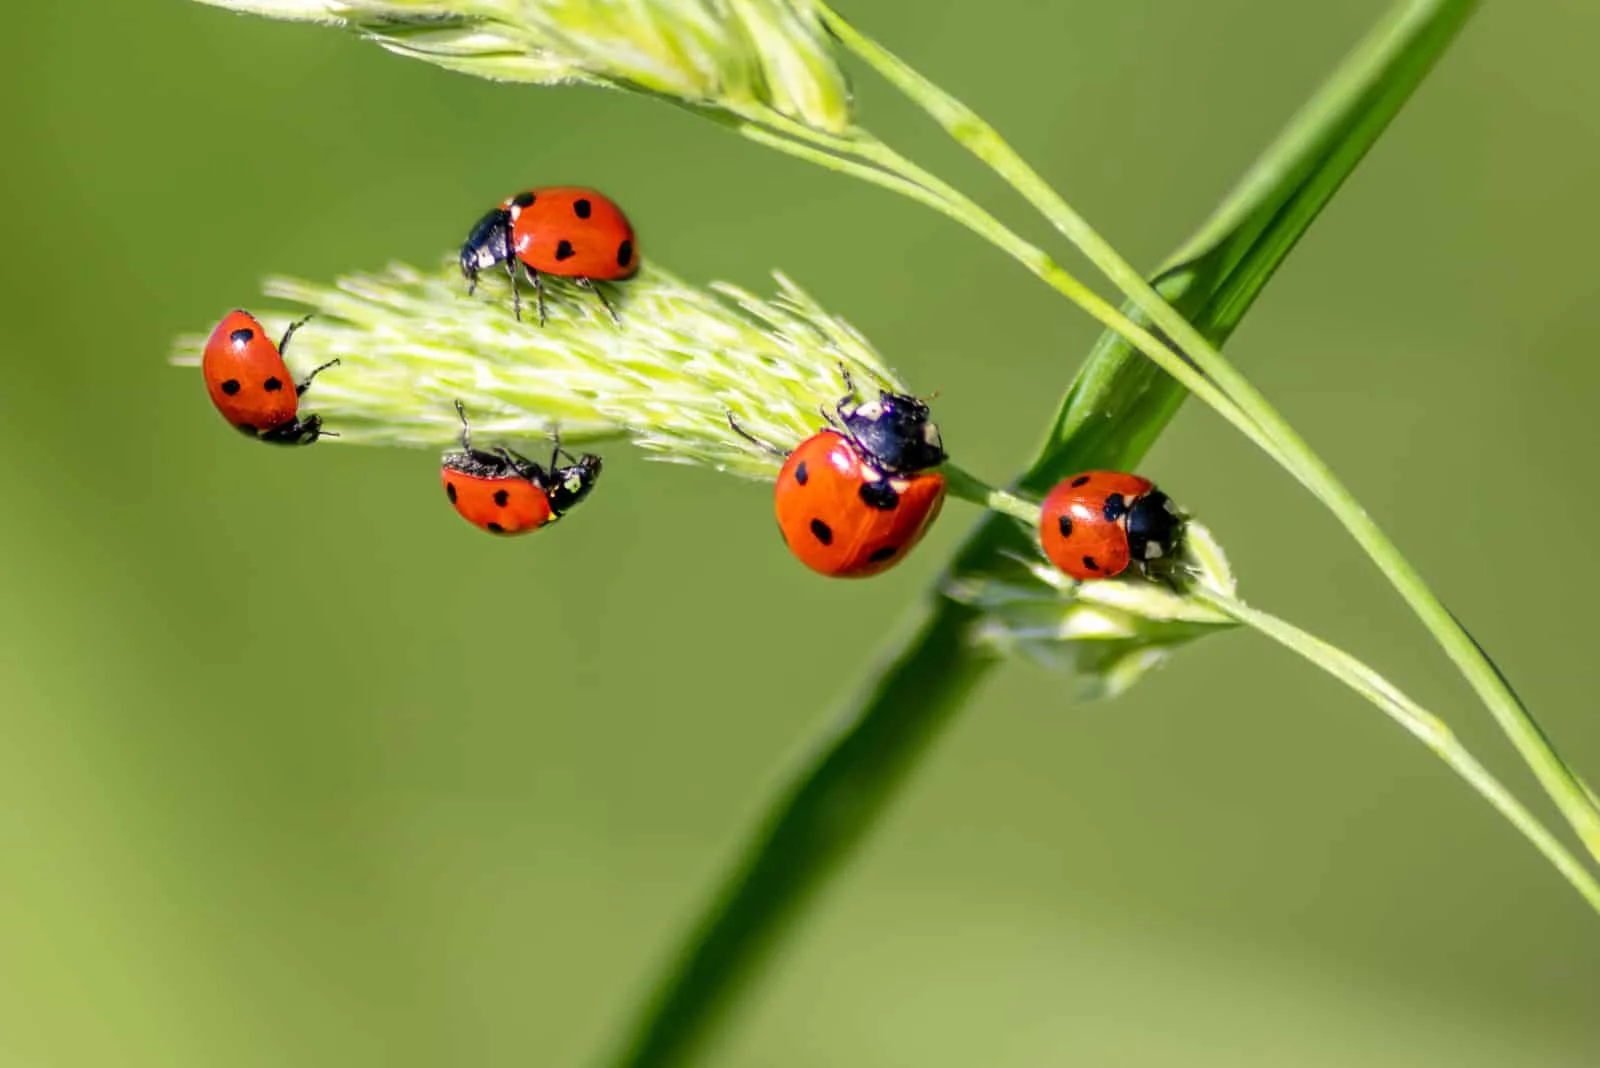 beautiful ladybugs climb barley